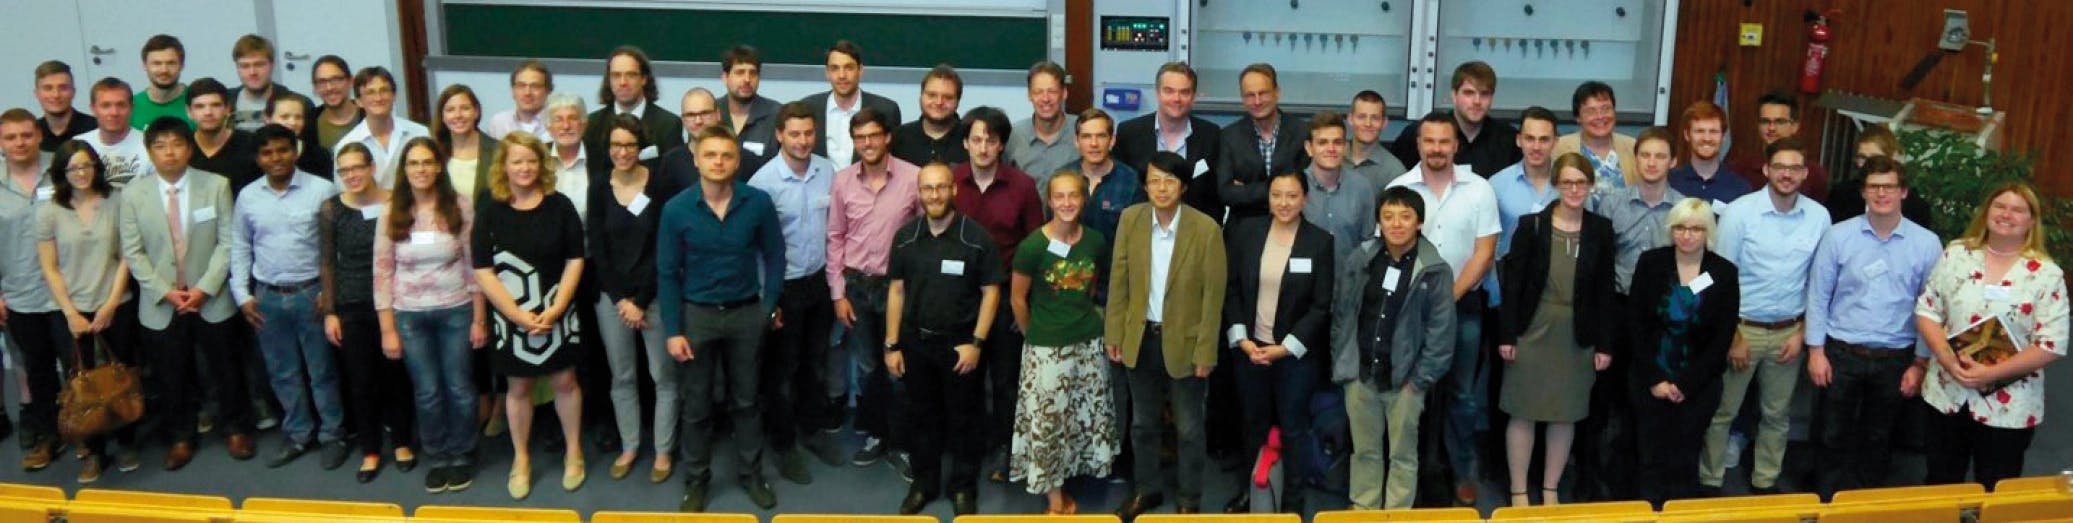 Bioanorganisches Symposium 2016 in Aachen